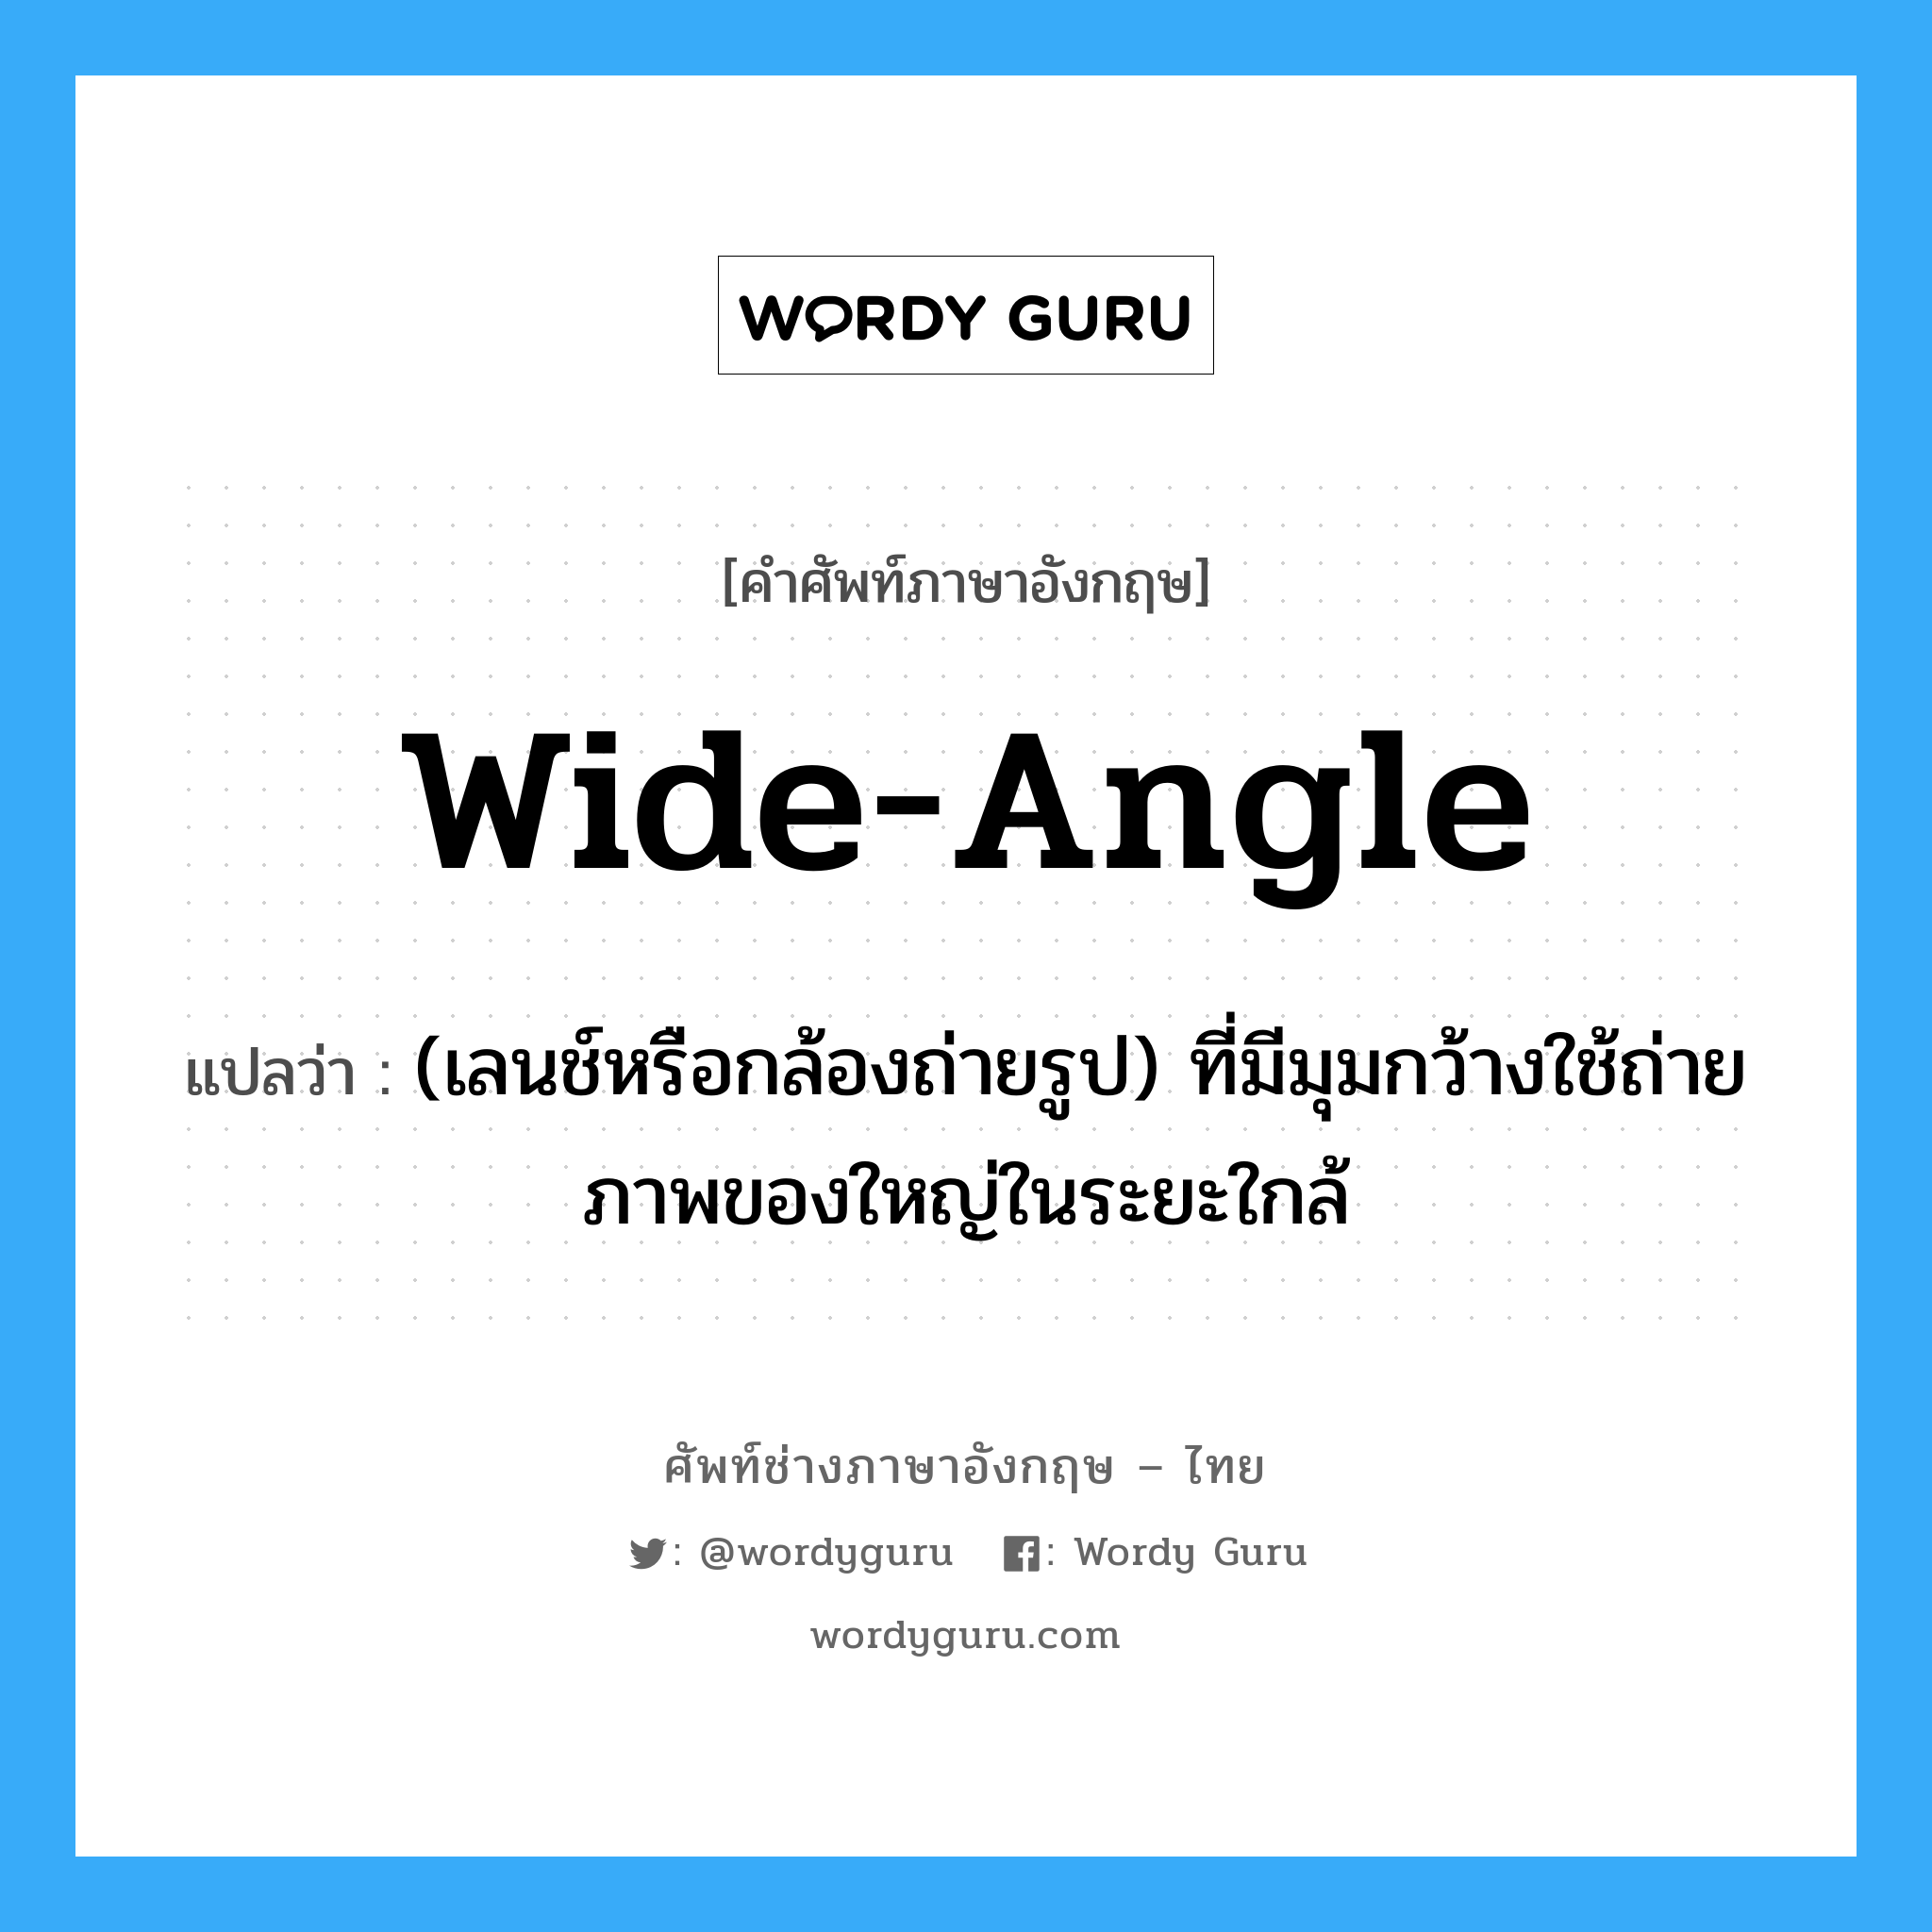 wide-angle แปลว่า?, คำศัพท์ช่างภาษาอังกฤษ - ไทย wide-angle คำศัพท์ภาษาอังกฤษ wide-angle แปลว่า (เลนช์หรือกล้องถ่ายรูป) ที่มีมุมกว้างใช้ถ่ายภาพของใหญ่ในระยะใกล้